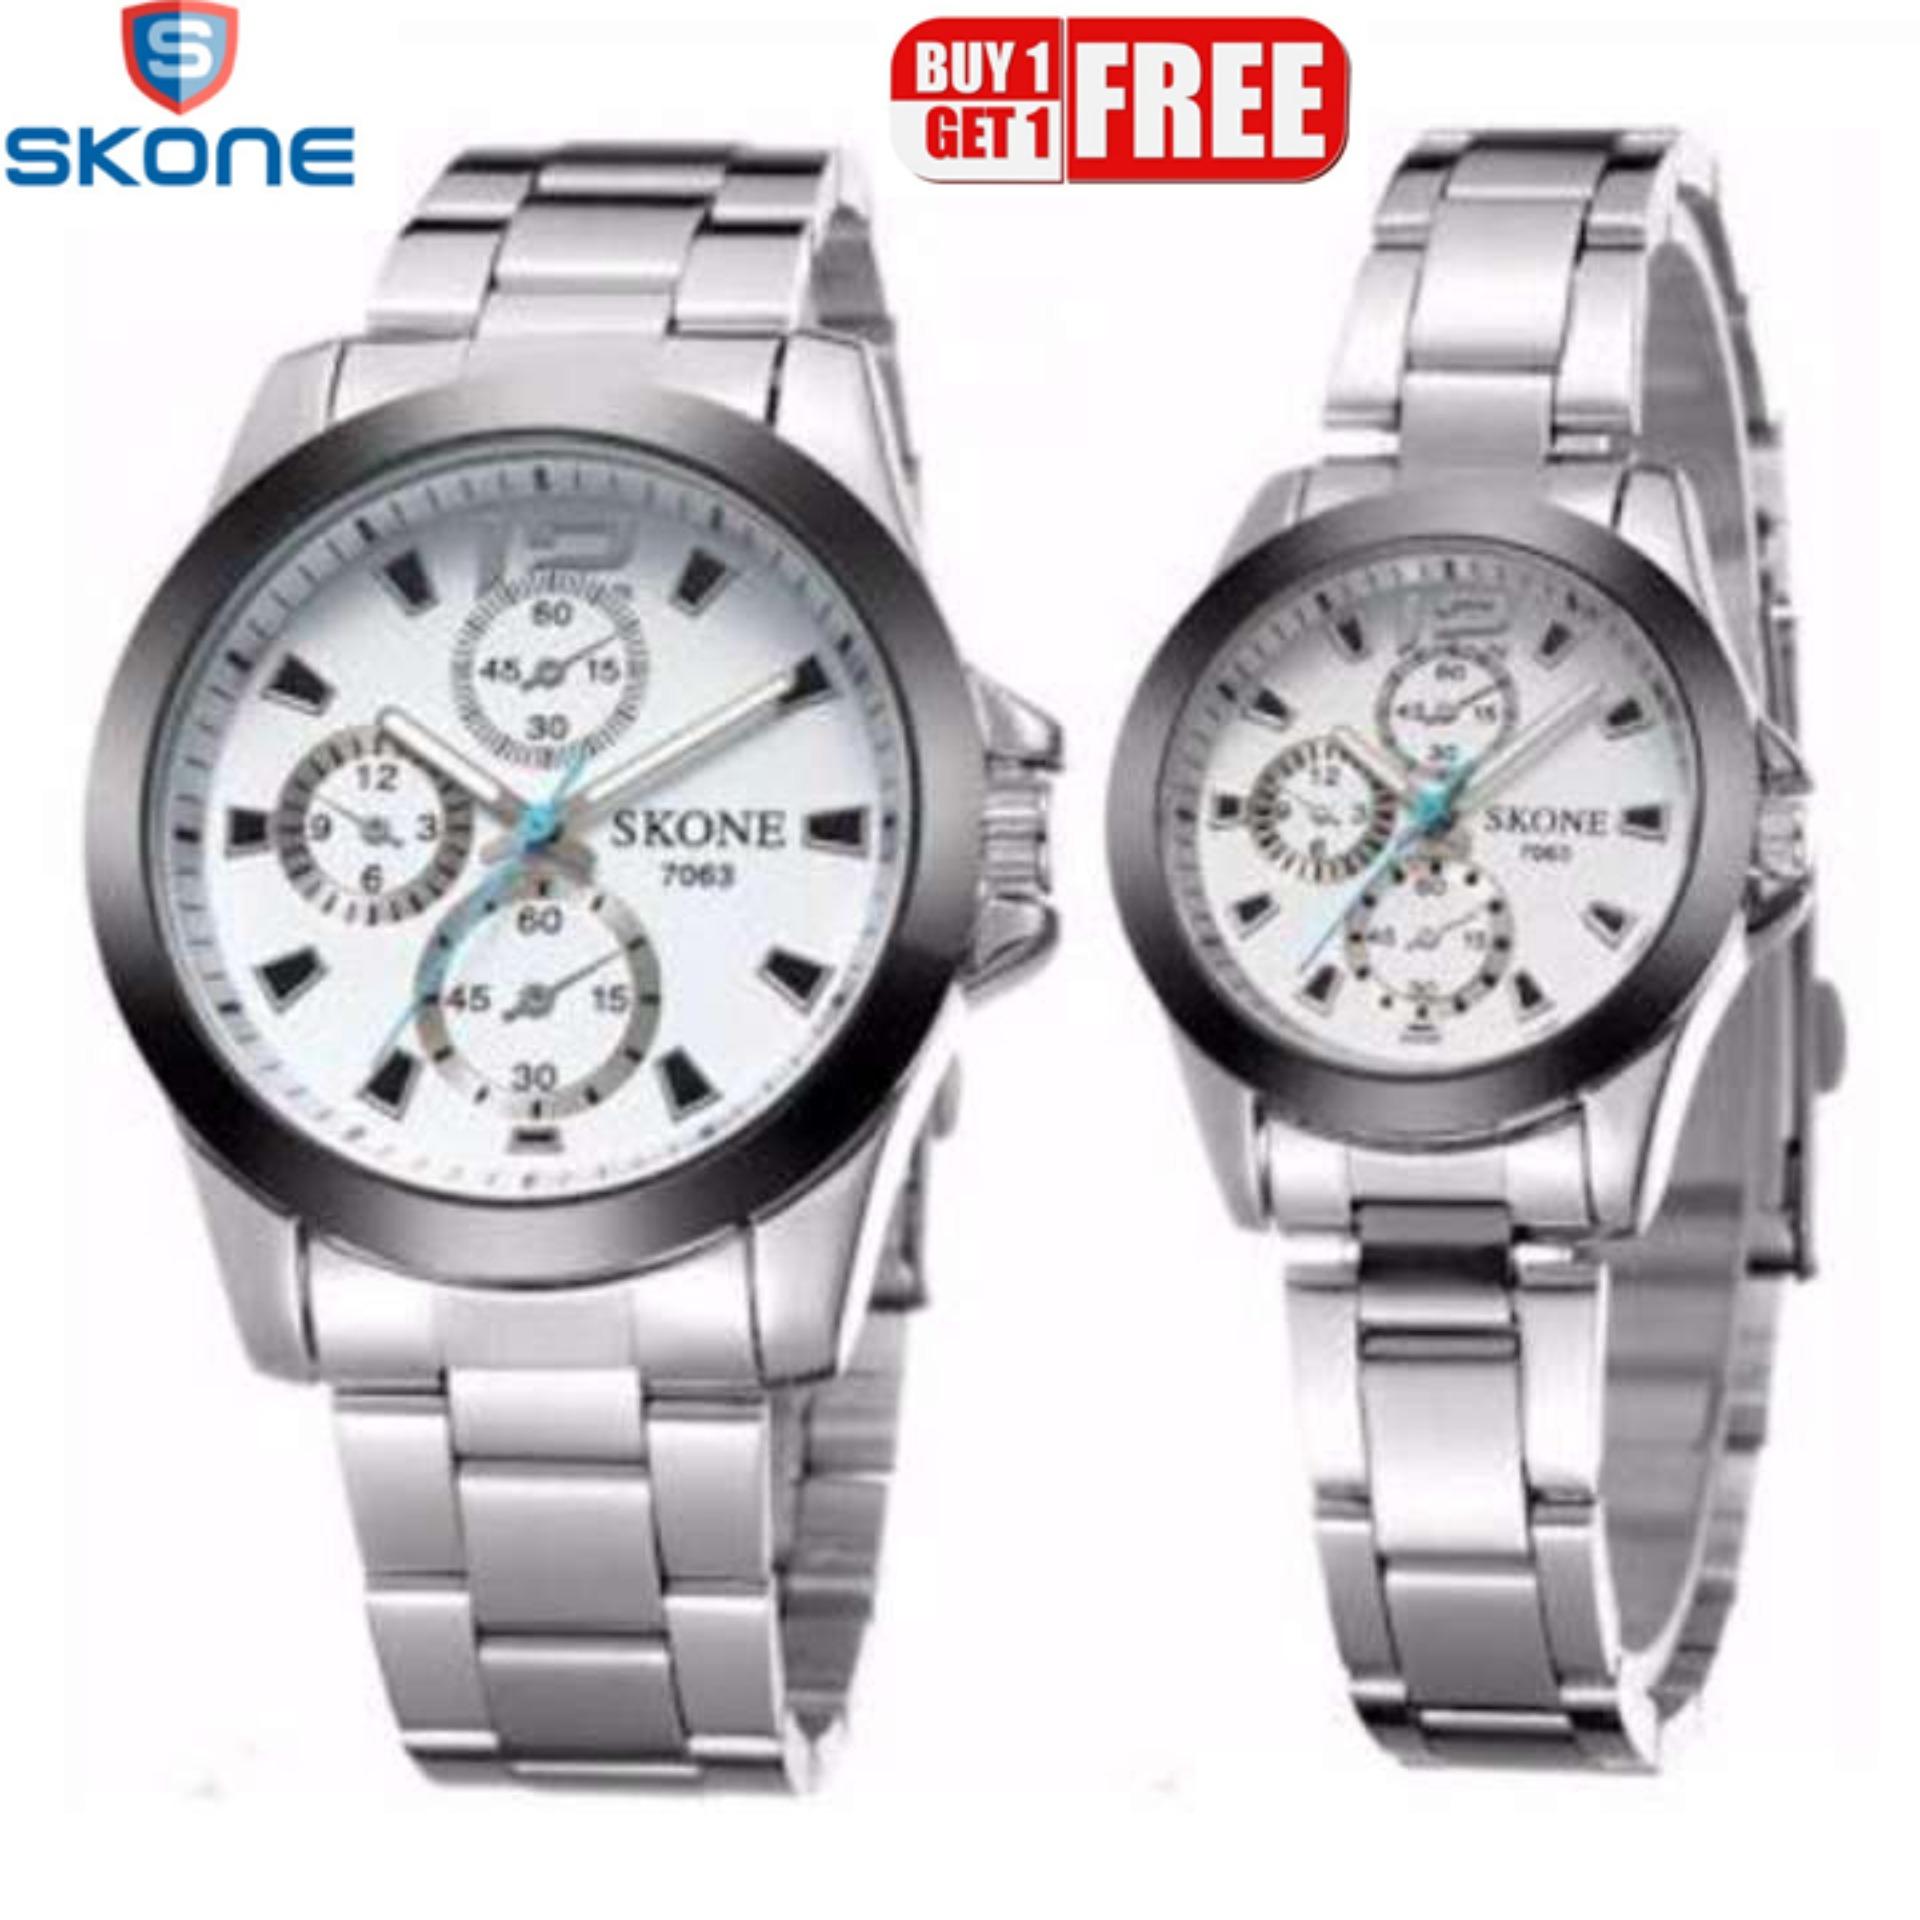 ซื้อ1แถม1ฟรี！ นาฬิกาข้อมือคู่รัก SKONE รุ่น 7063 กันน้ำ 100% (ได้สินค้า 2 เรือน)ฟรี! กล่องเซ็ท!